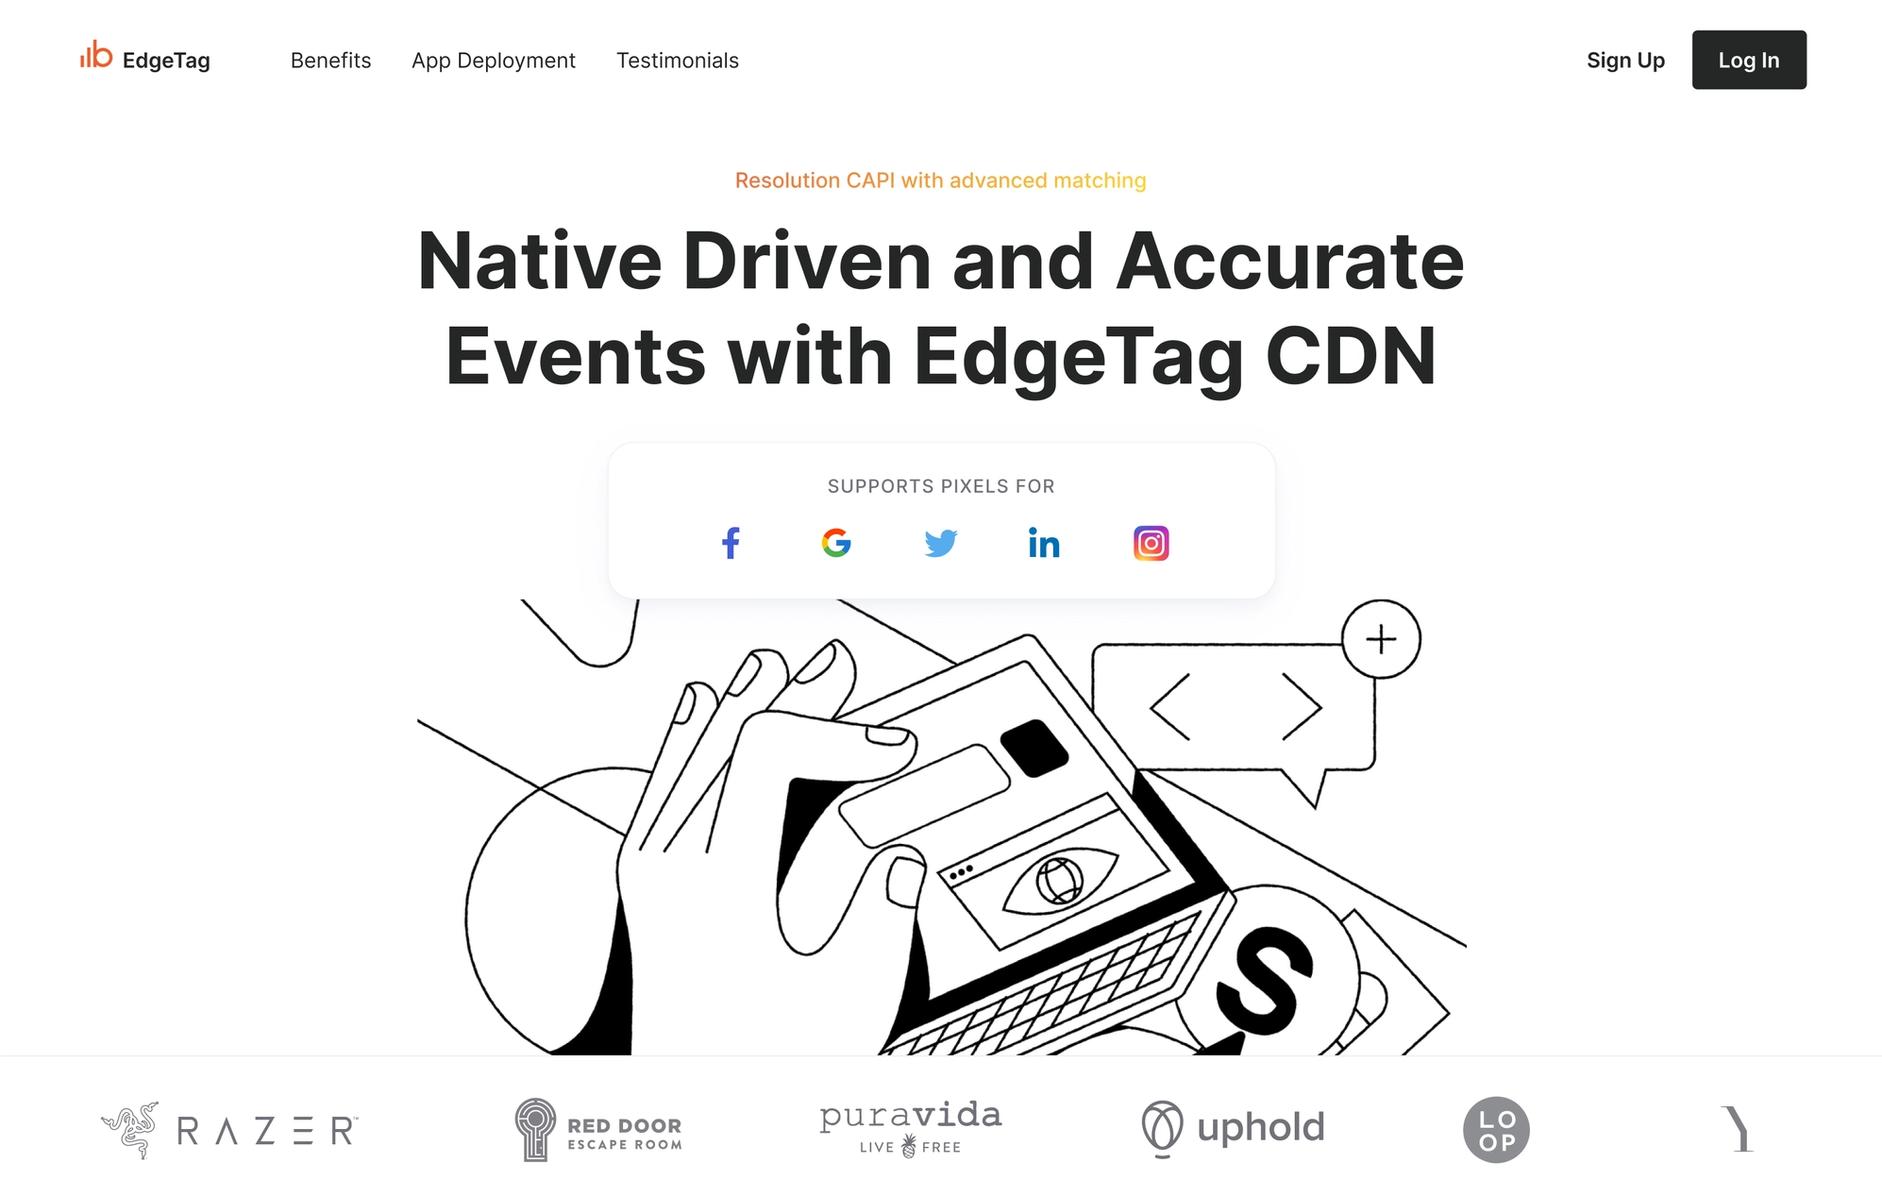 EdgeTag homepage